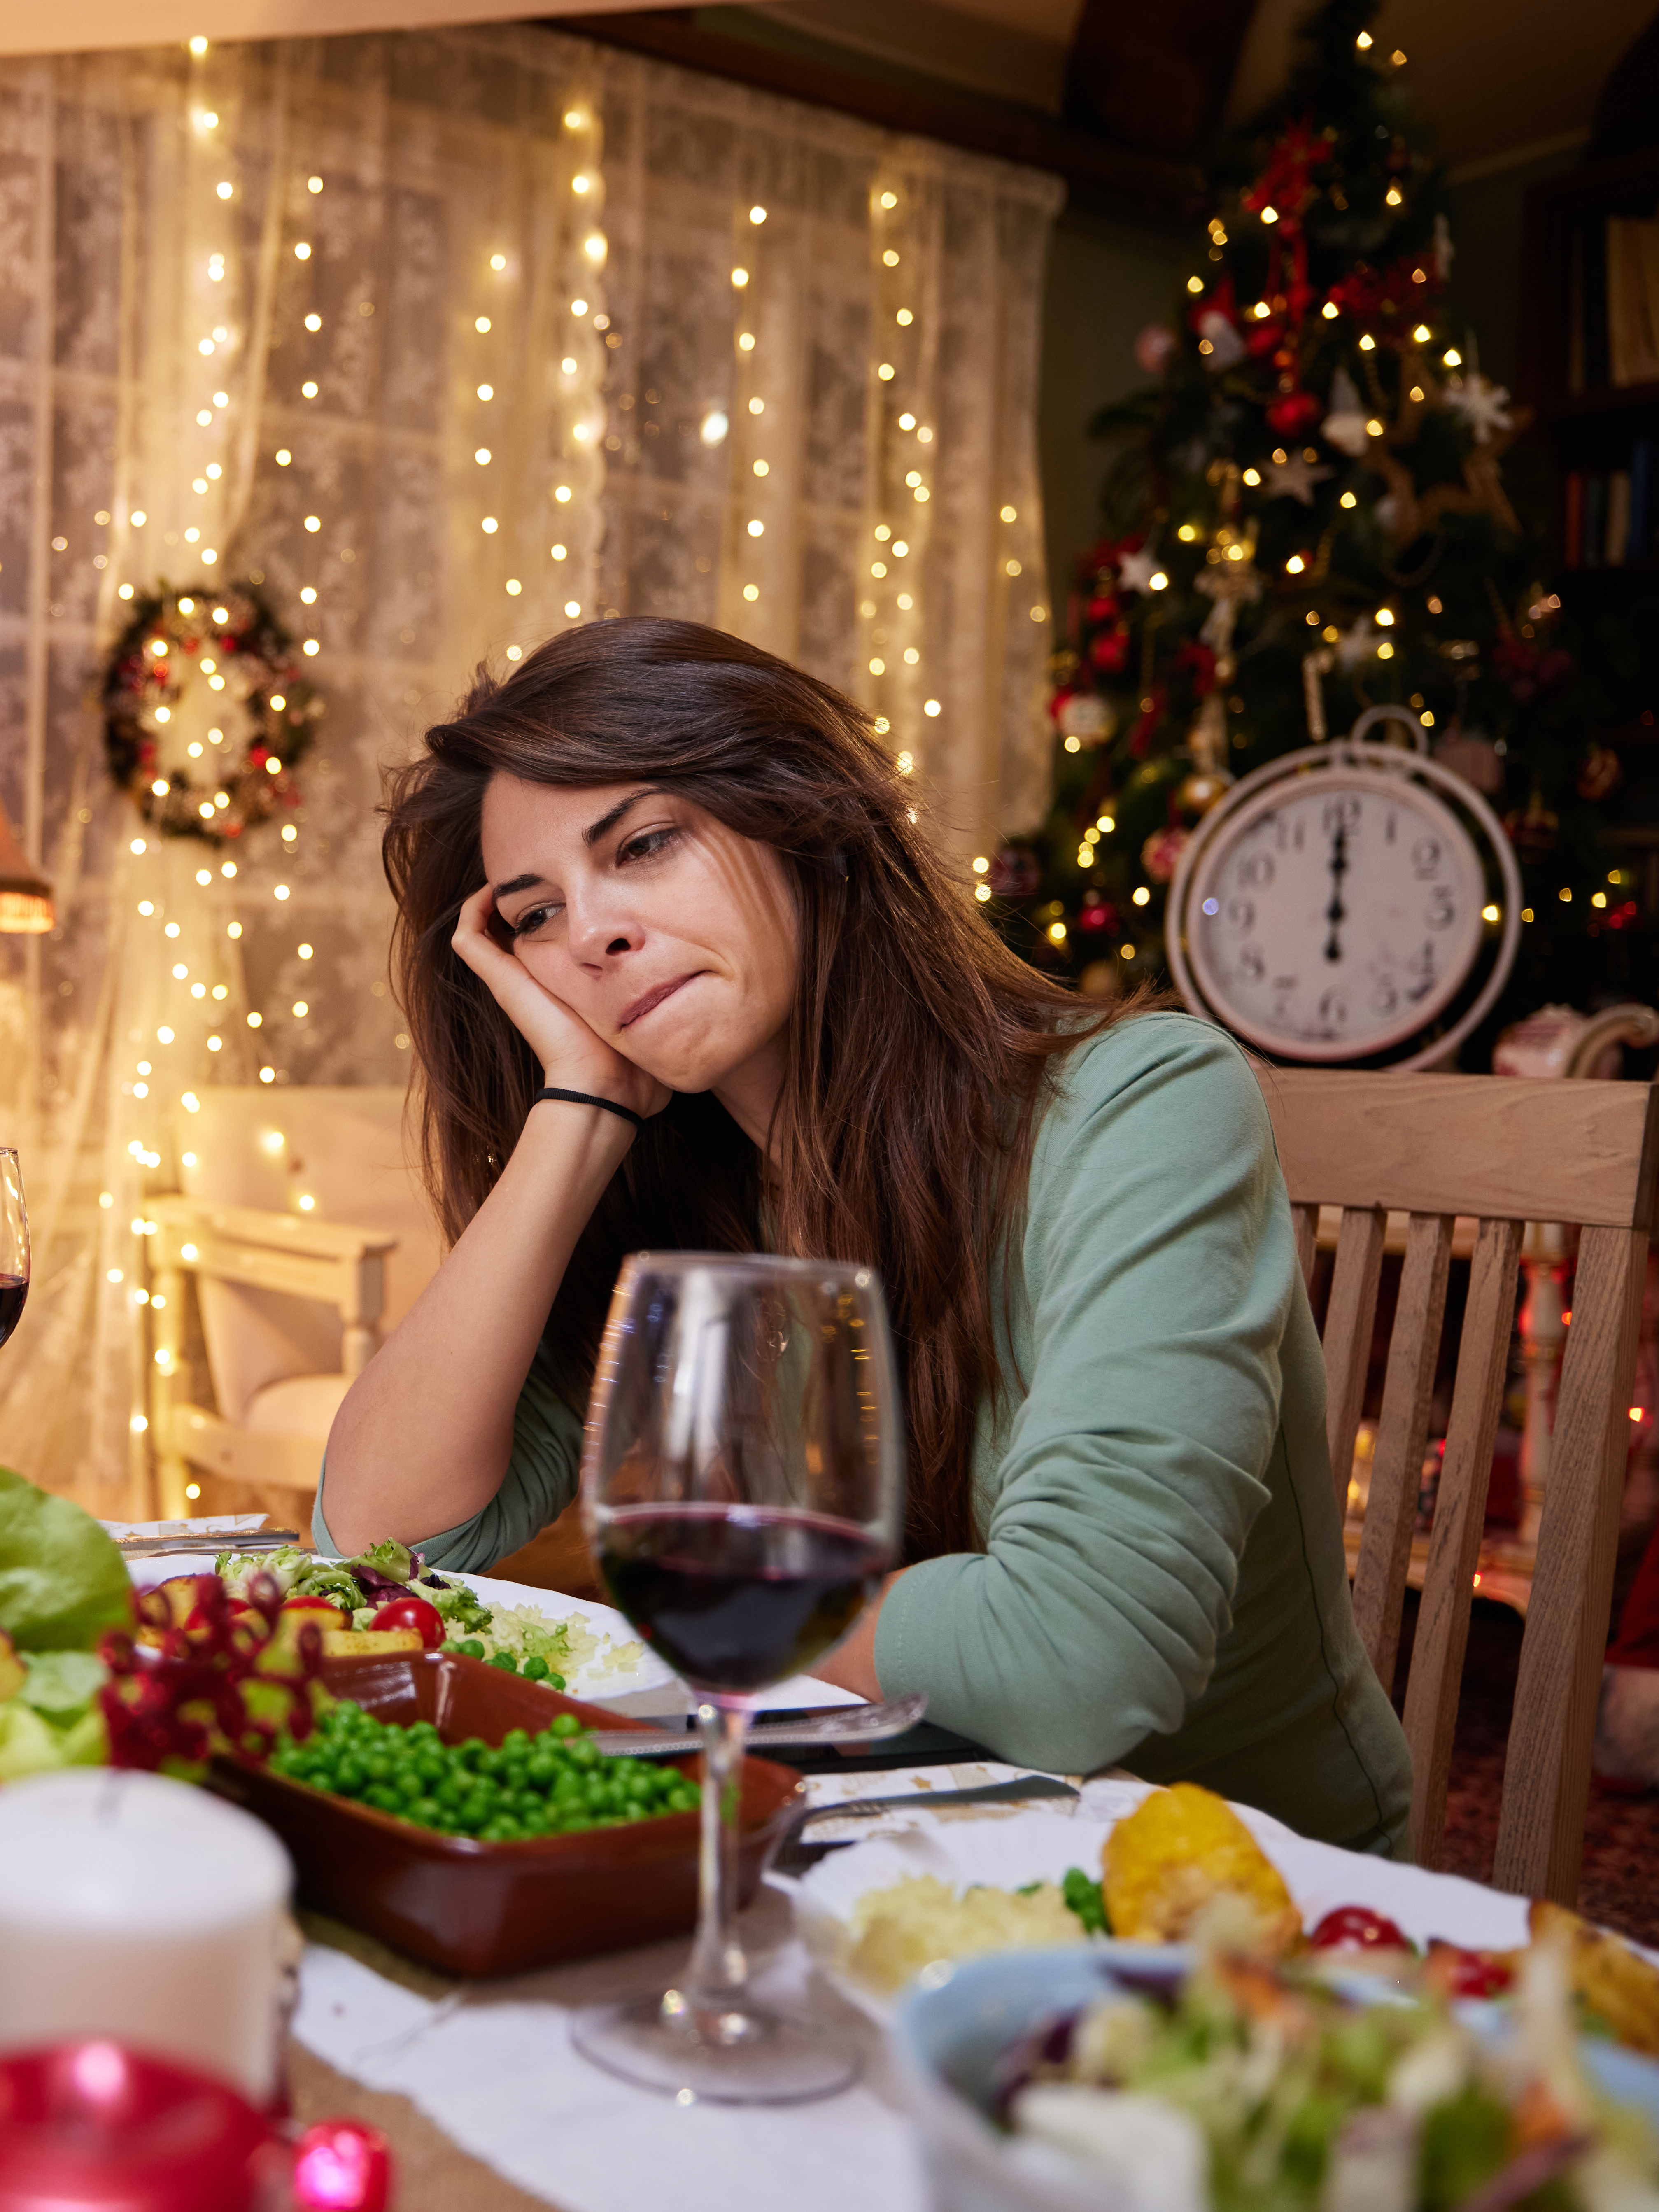 Eine traurige Frau, die an Heiligabend allein am Esstisch sitzt | Quelle: Getty Images